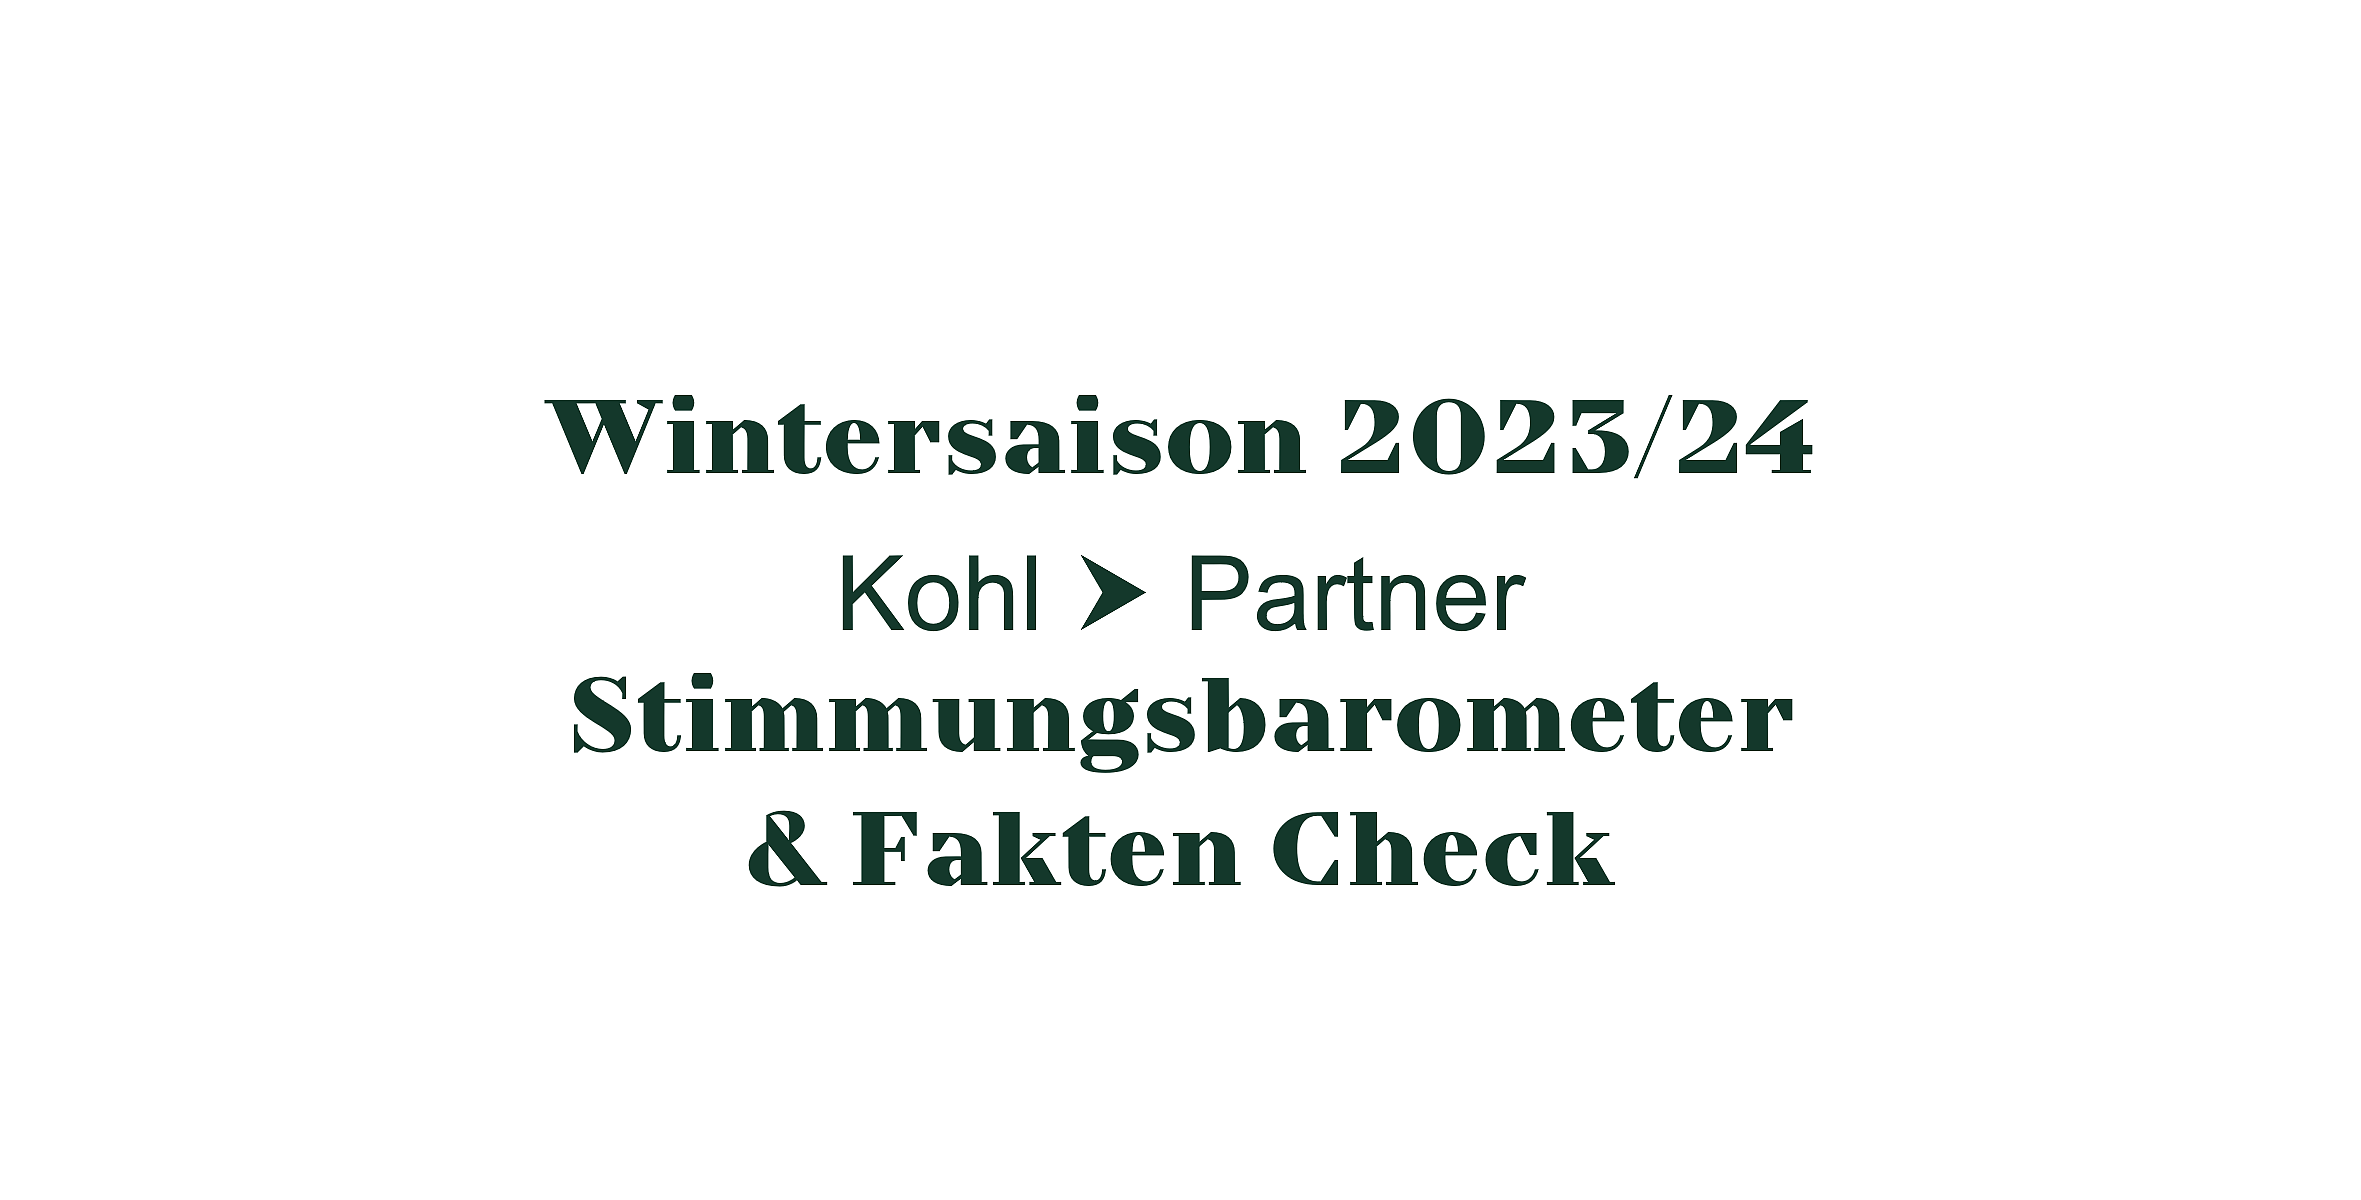 KP_Stimmungsbaromenter-FaktenCheck_Wintersaison23-24